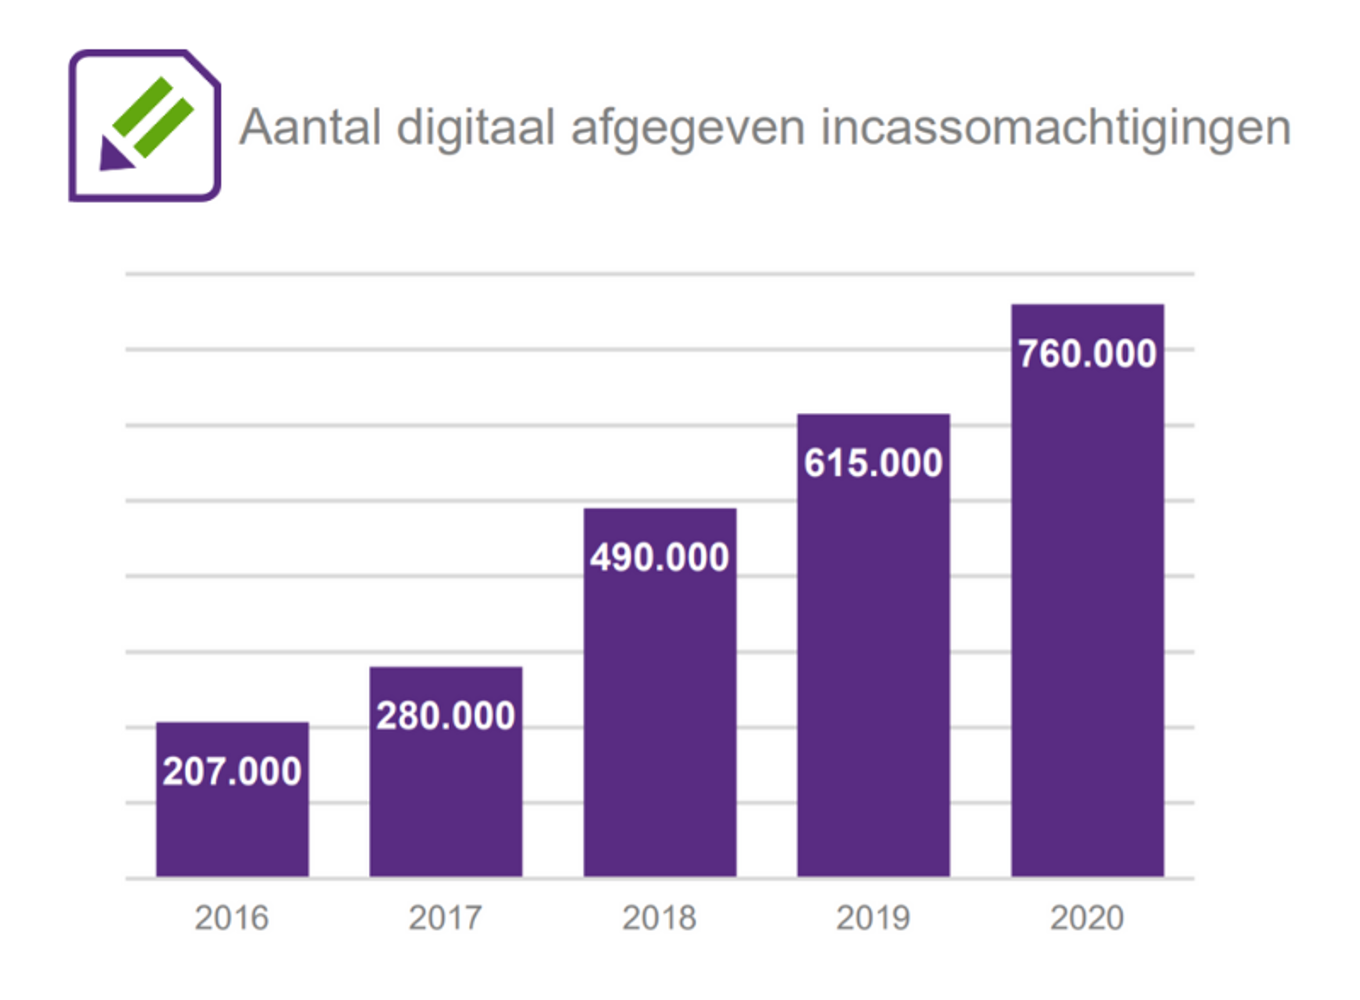 Het aantal digitale afgegeven incassomachtigingen is in 2020 met 24% gestegen